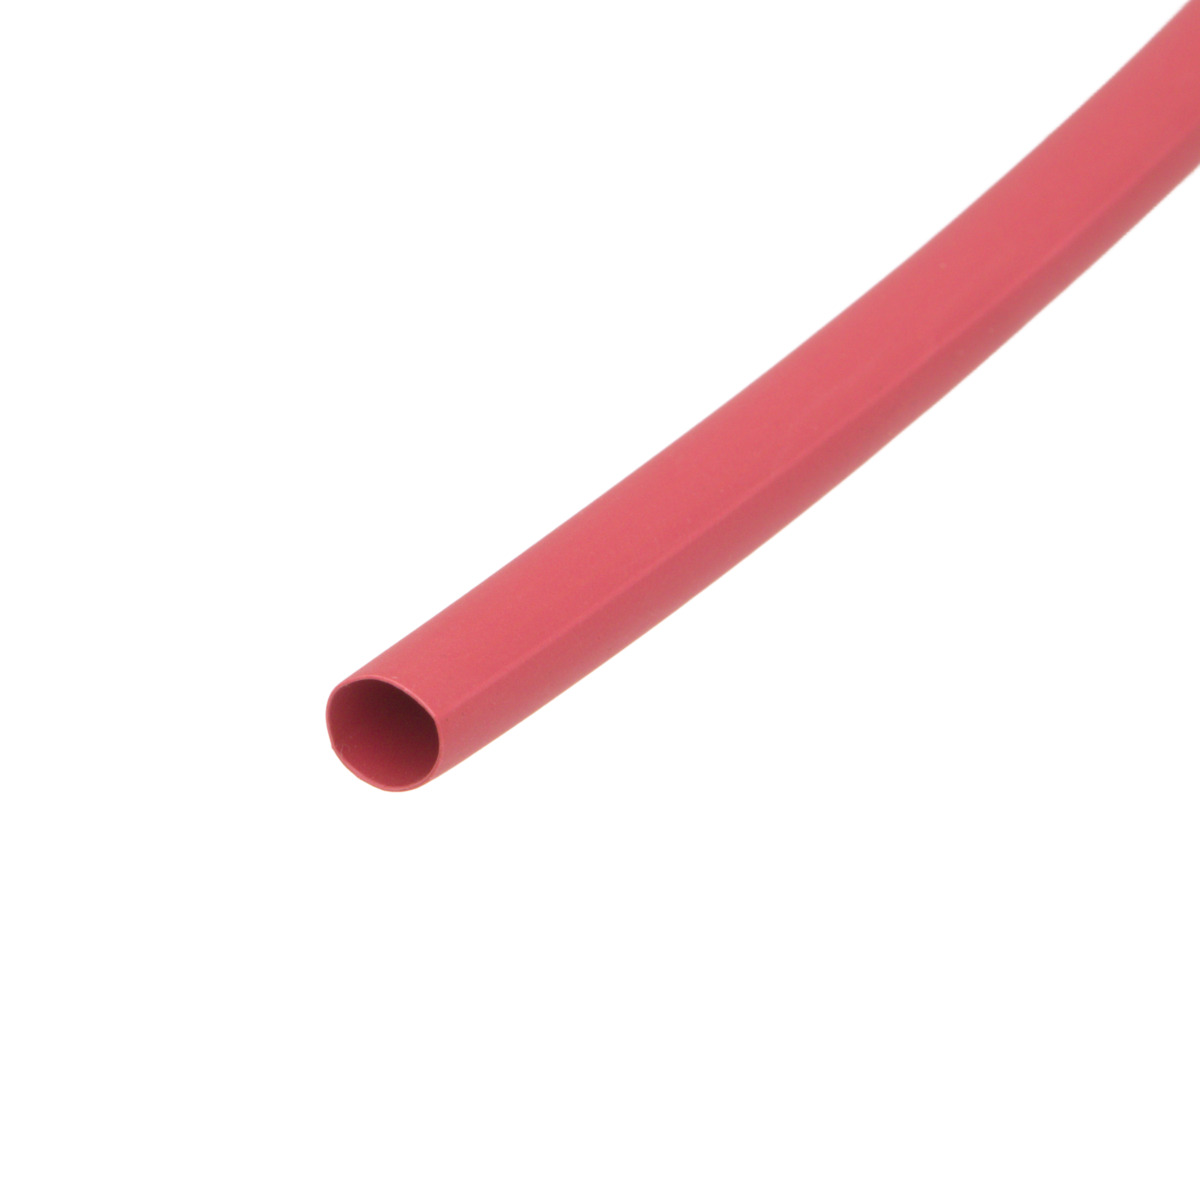 Pack de corte [1.2m] de tubo termorretráctil 2:1 Ø12.7mm rojo – Poliolefina libre de halógeno e ignífugo [x10]